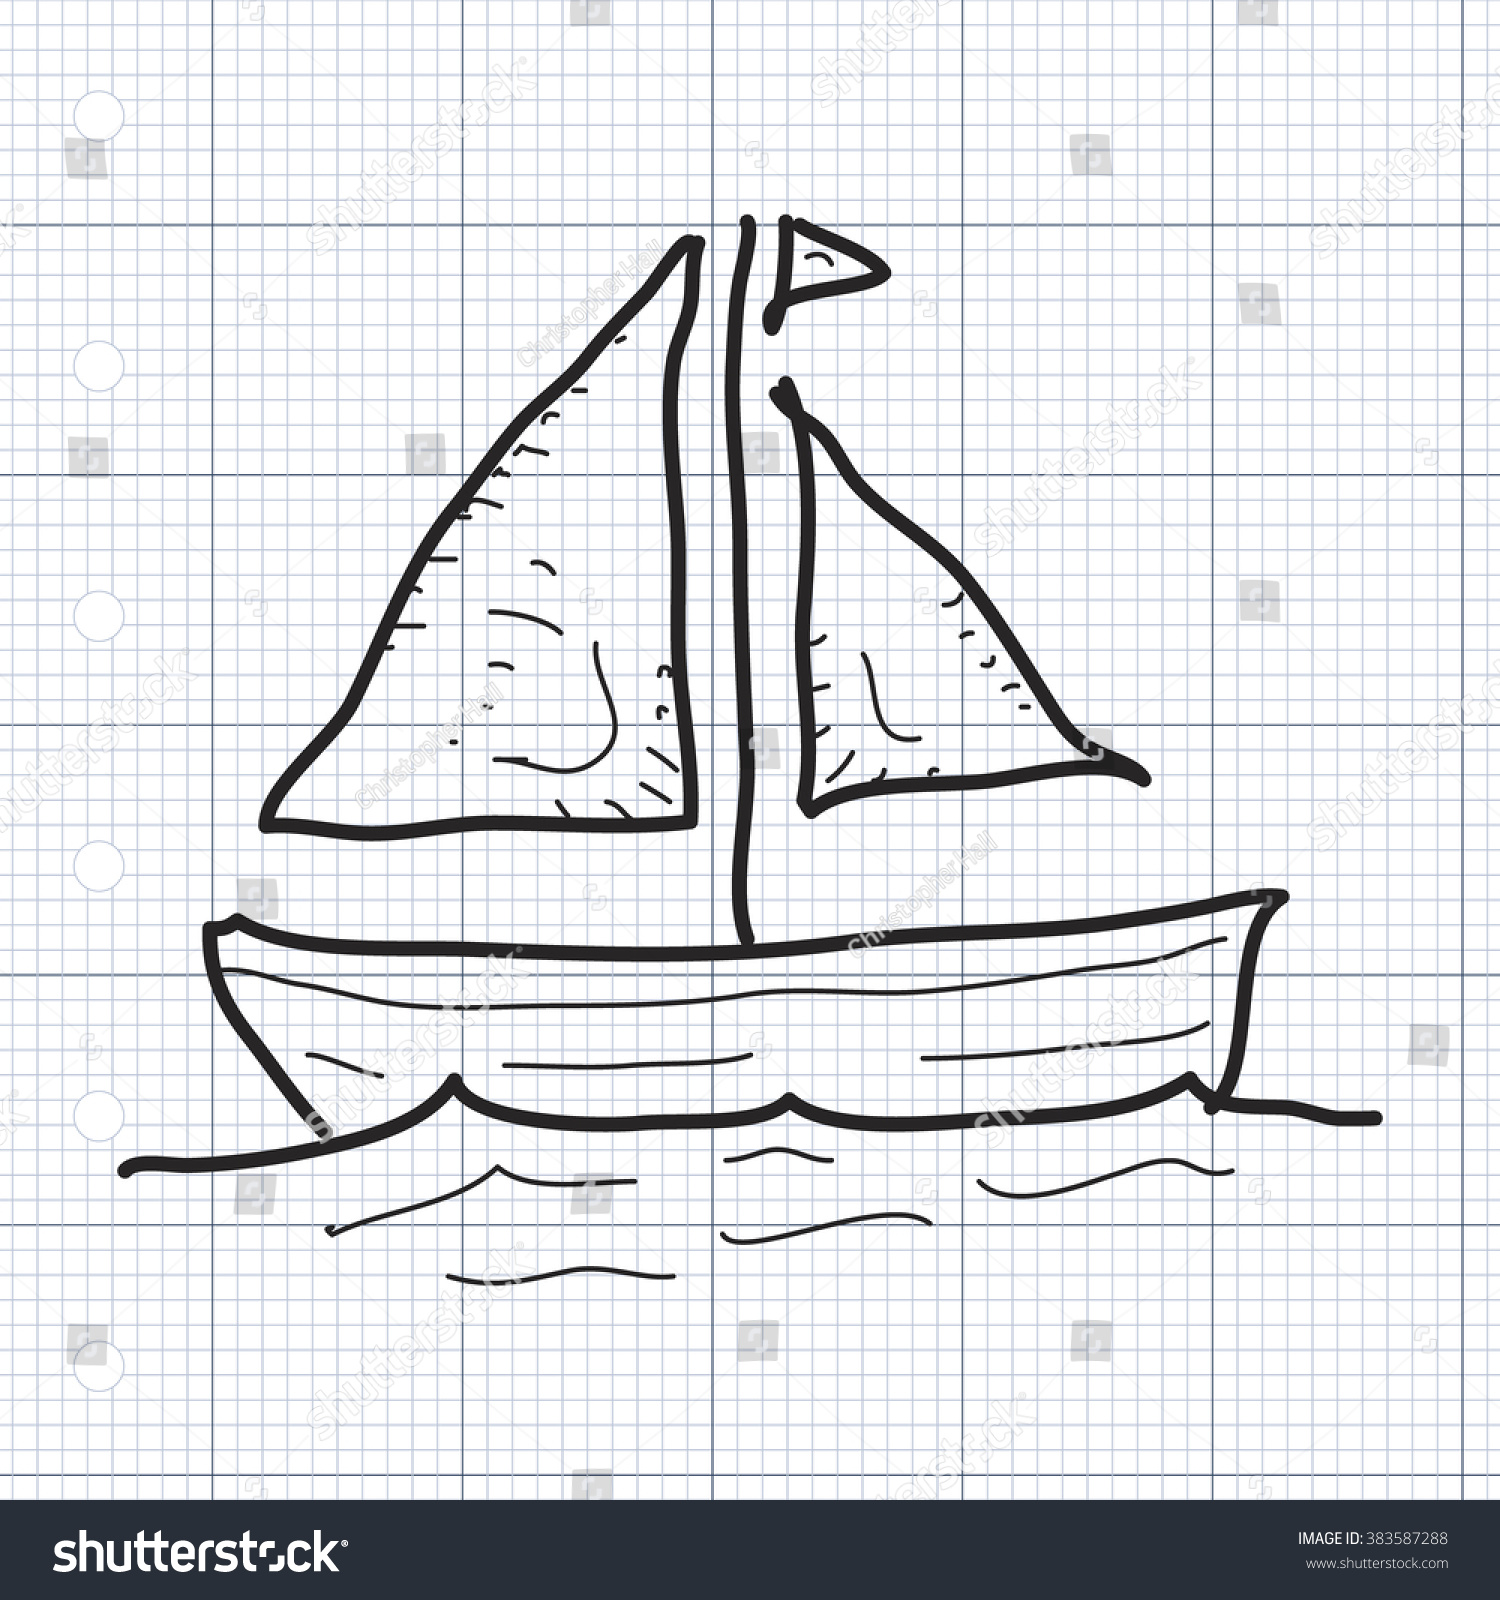 Яхта рисунок для детей карандашом